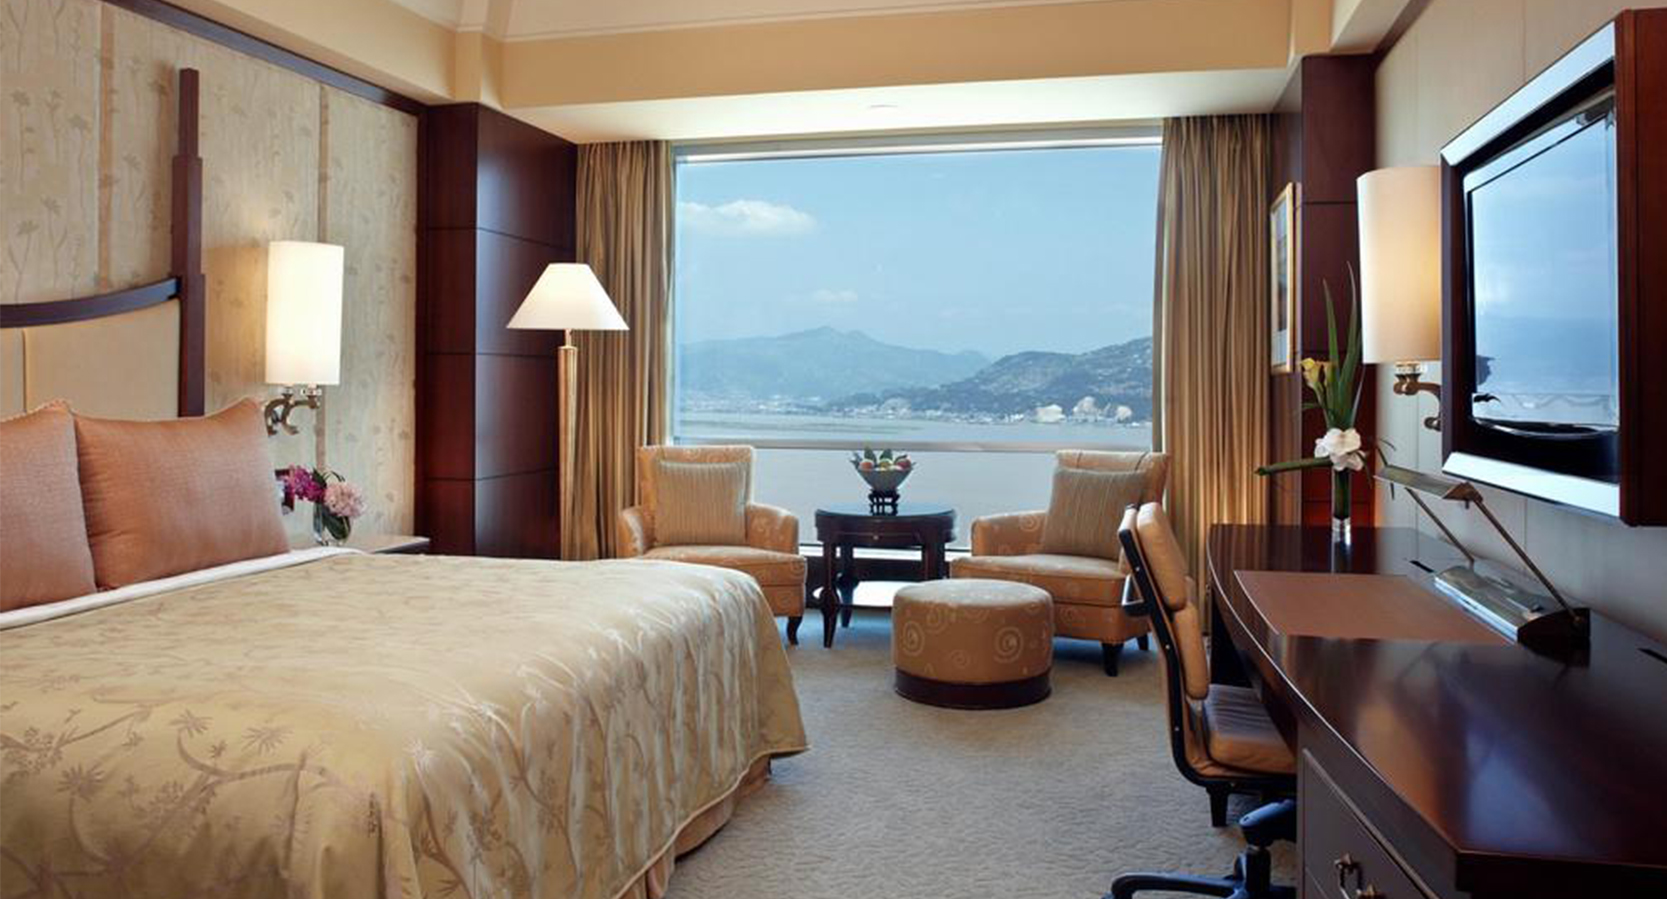 乳胶床垫为你满足酒店宾客每晚舒适睡眠要求